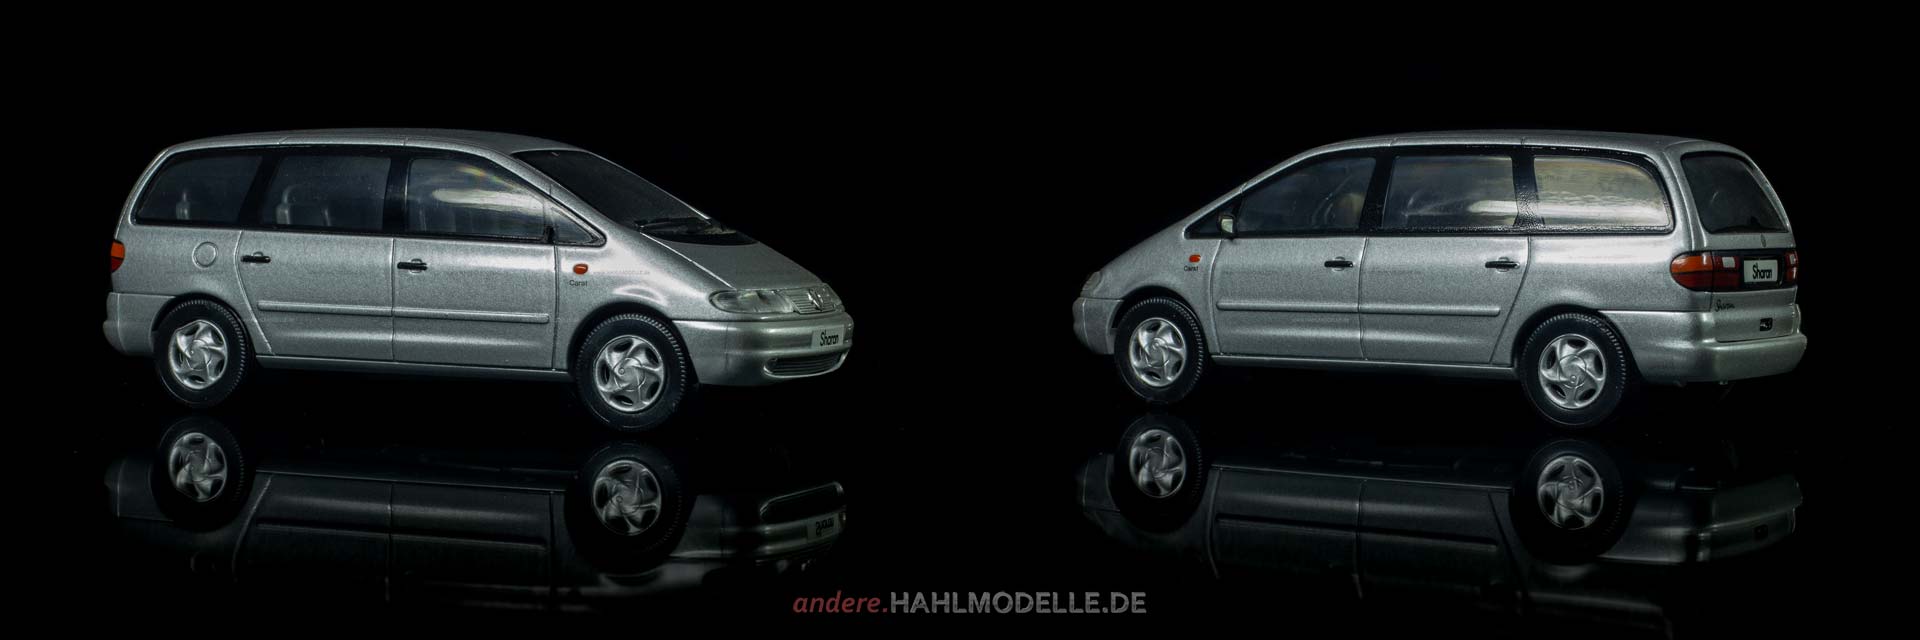 Volkswagen Sharan (Typ 7M8) | Van | Herpa | 1:43 | www.andere.hahlmodelle.de